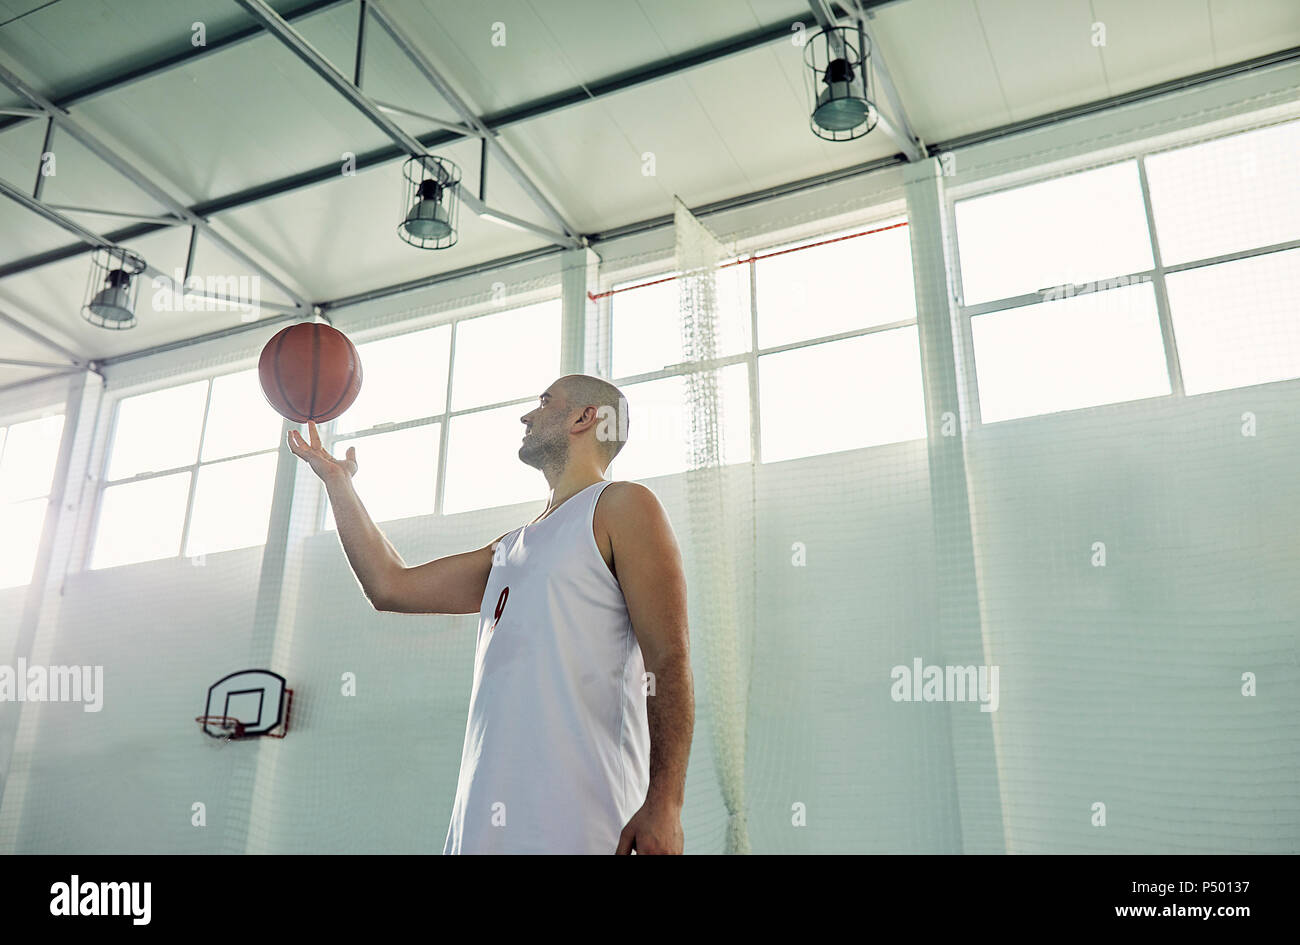 L'uomo gioca con la pallacanestro, interni Foto Stock